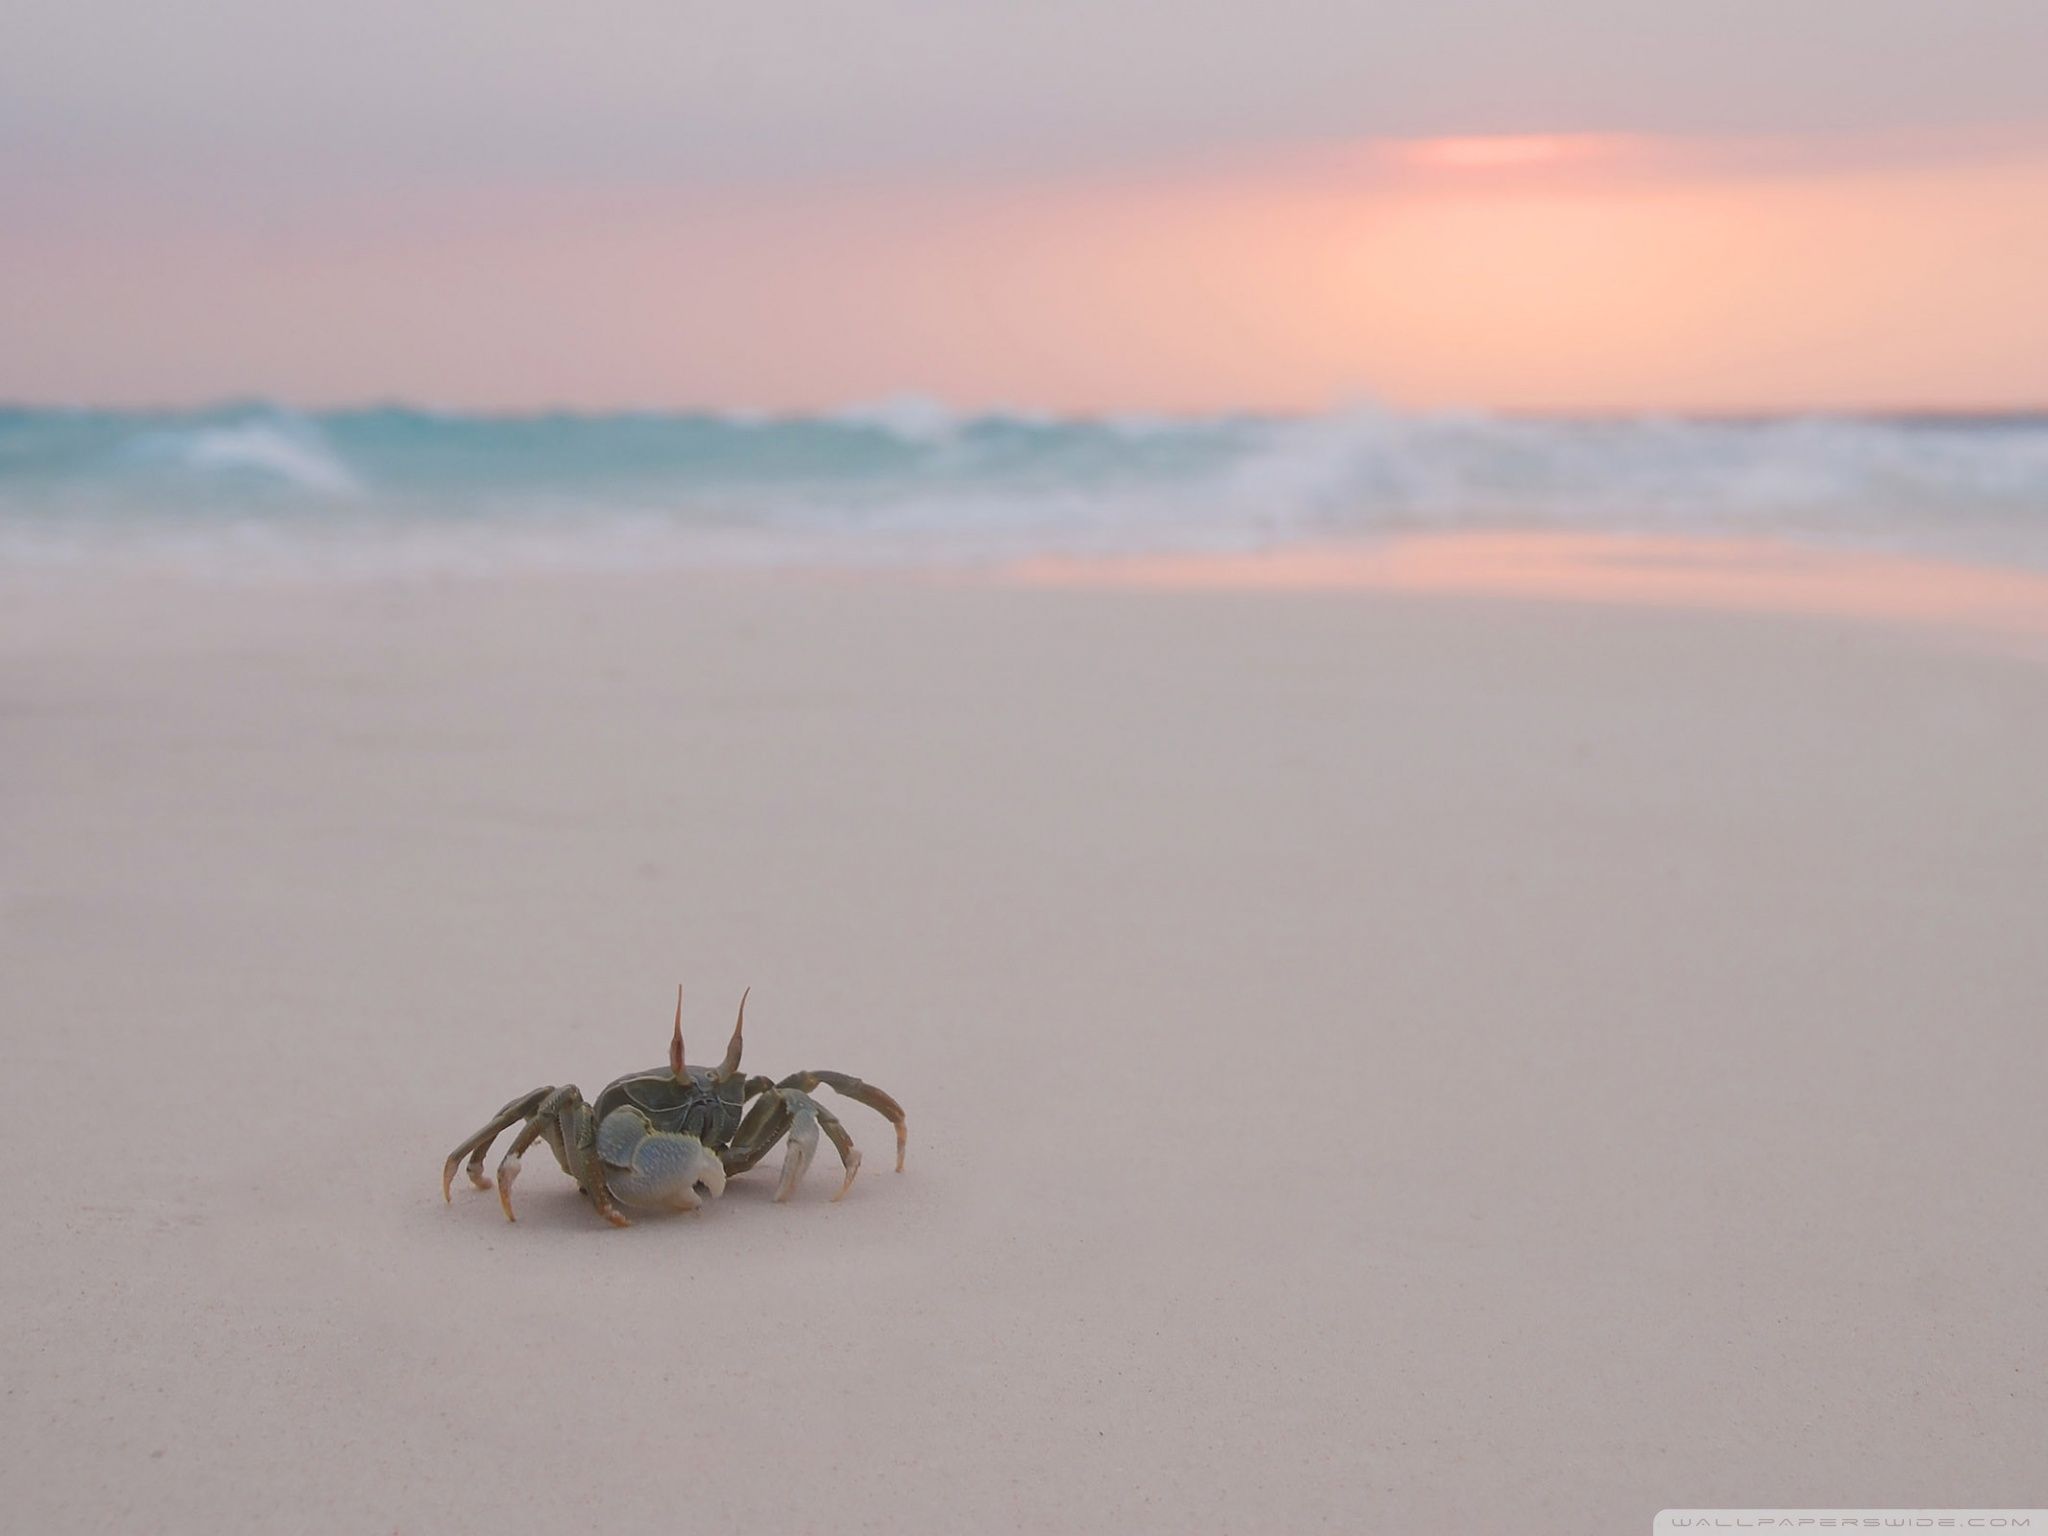 Crab on the beach wallpaper 2560x1600 - Beach